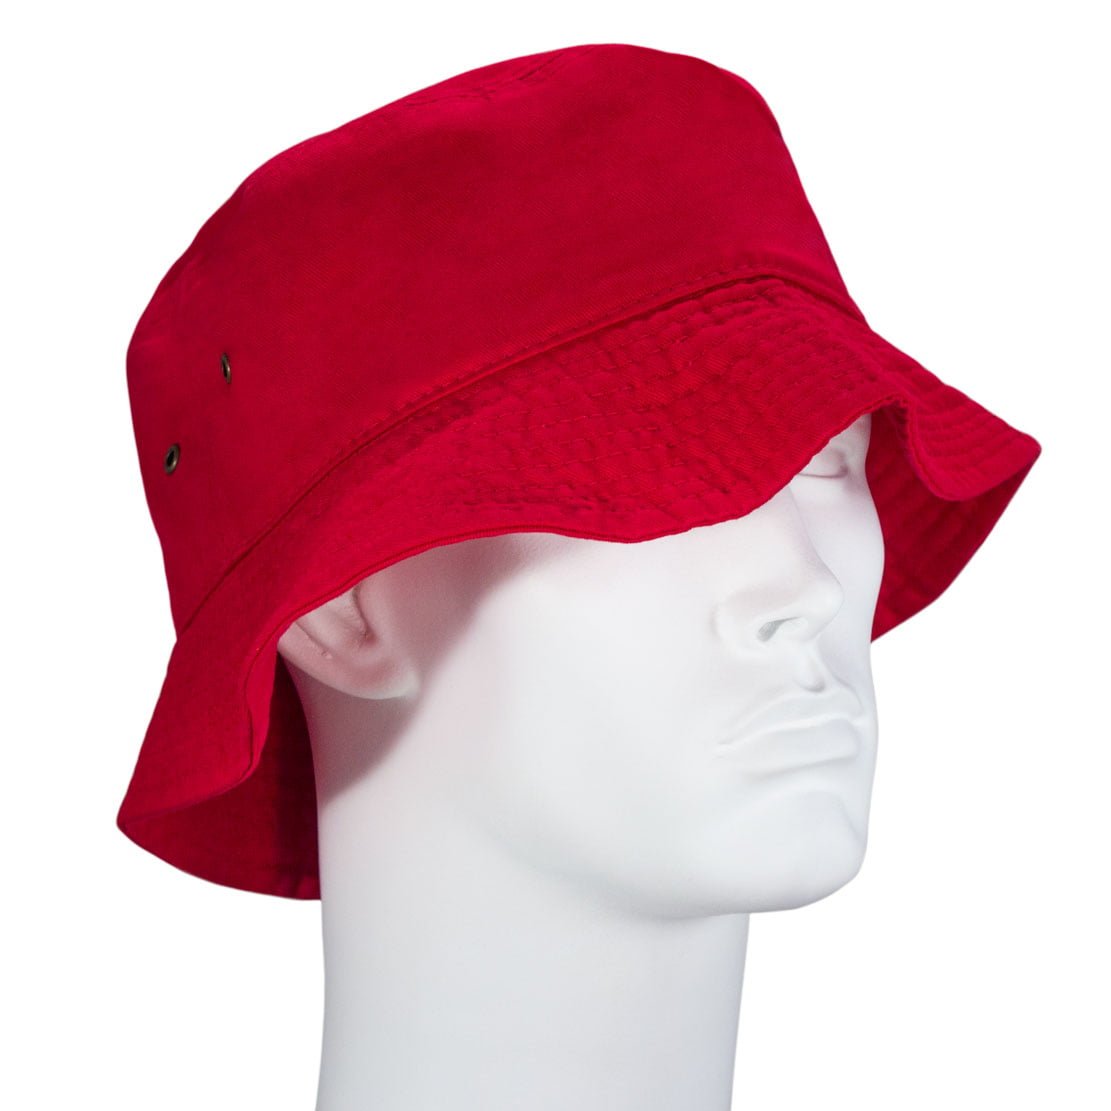 RED Bucket HAT - Dozen Packed